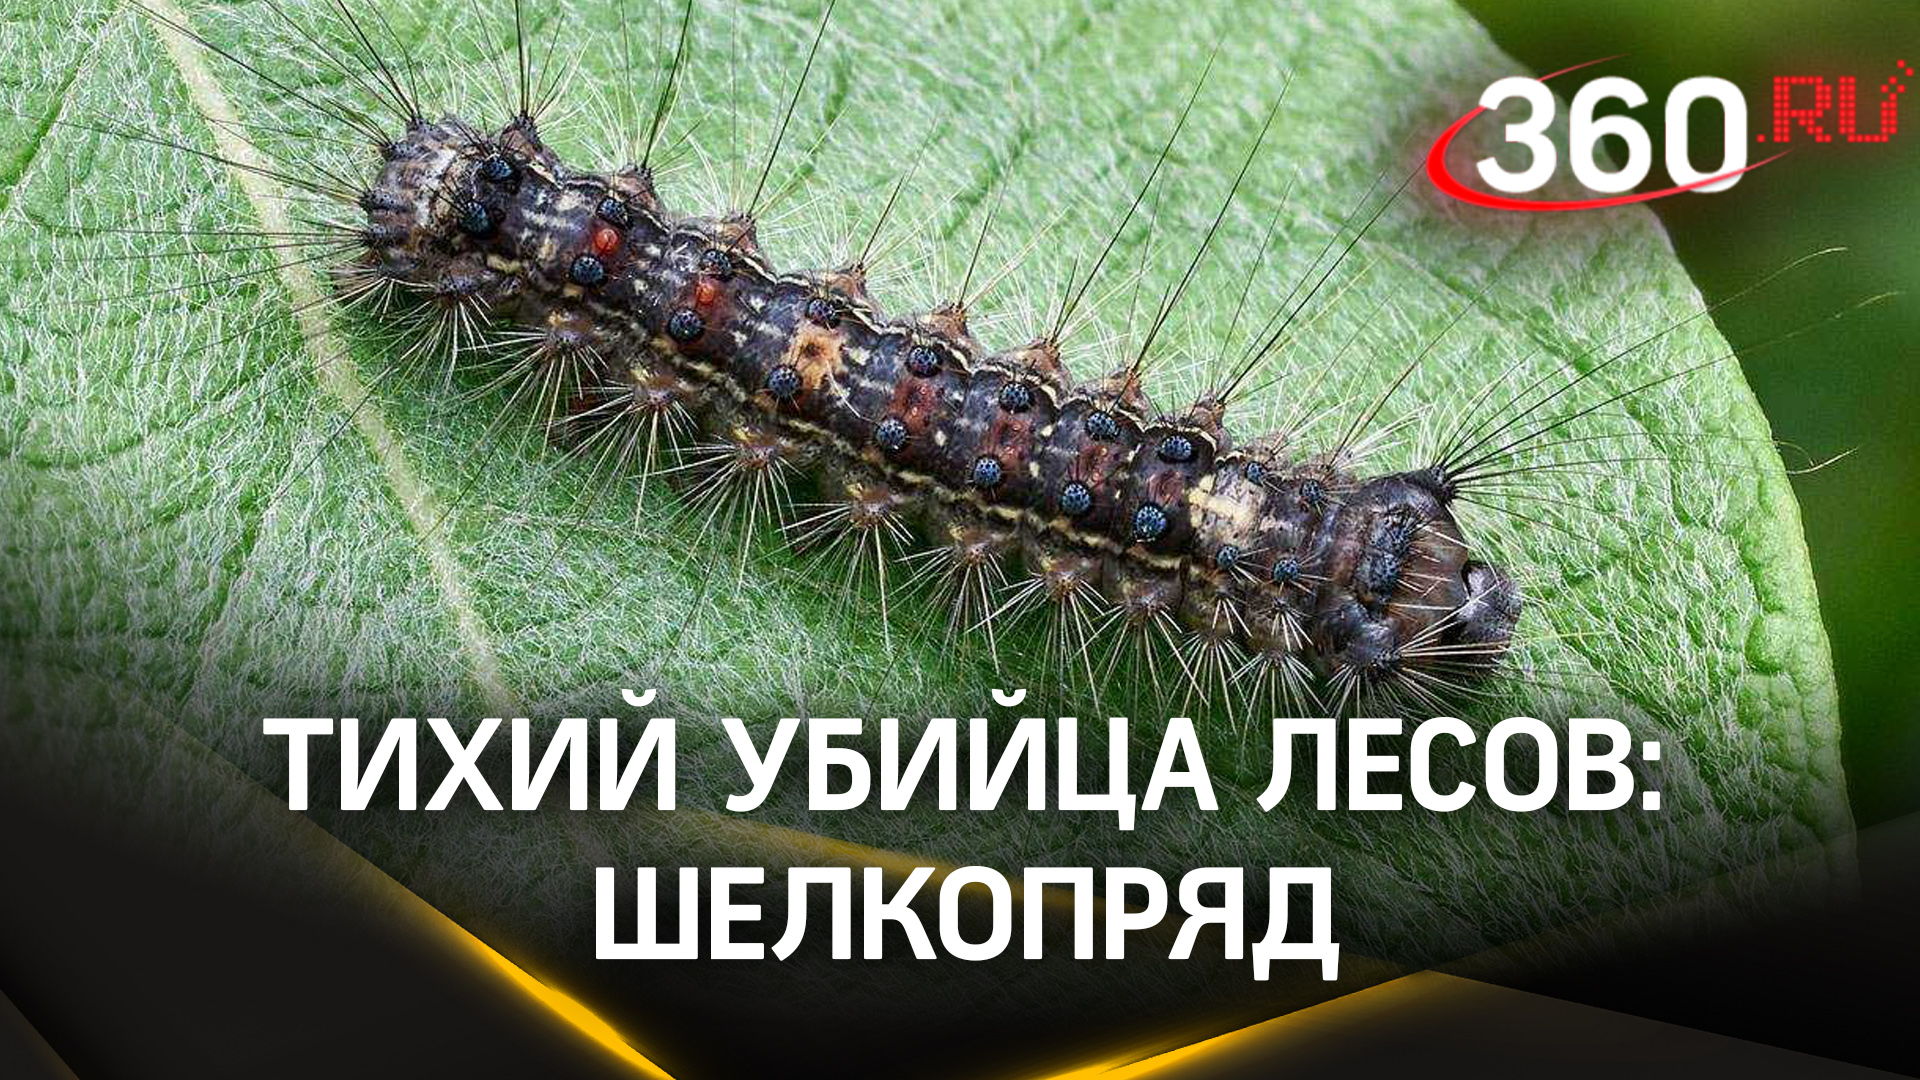 Опасный вредитель: как гусеница непарного шелкопряда объедает листву и уничтожает леса